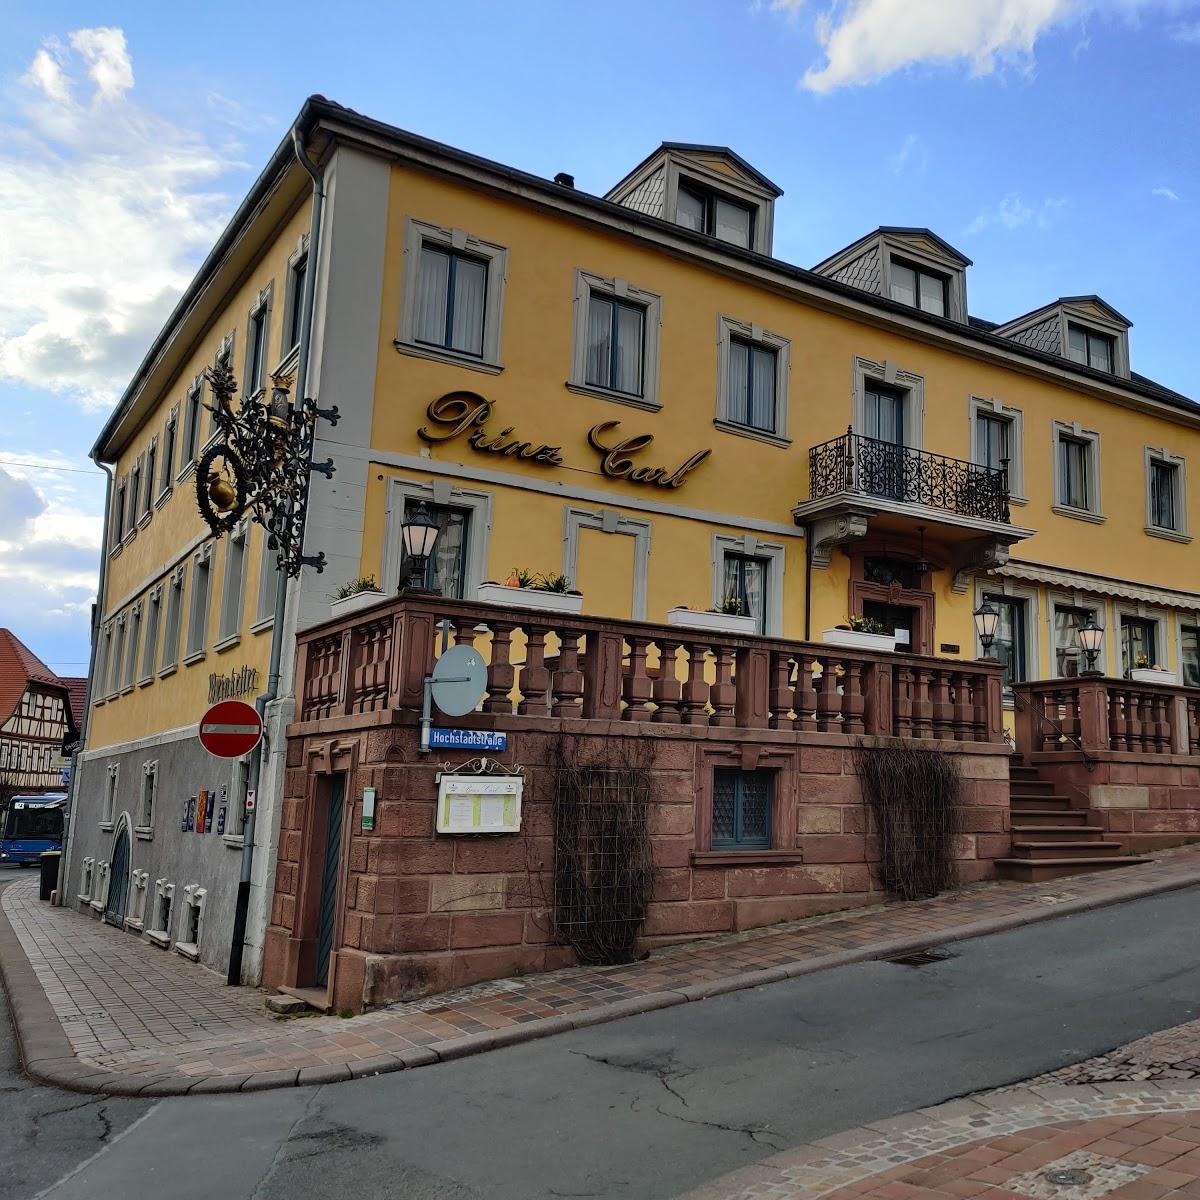 Restaurant "Prinz Carl" in  Buchen